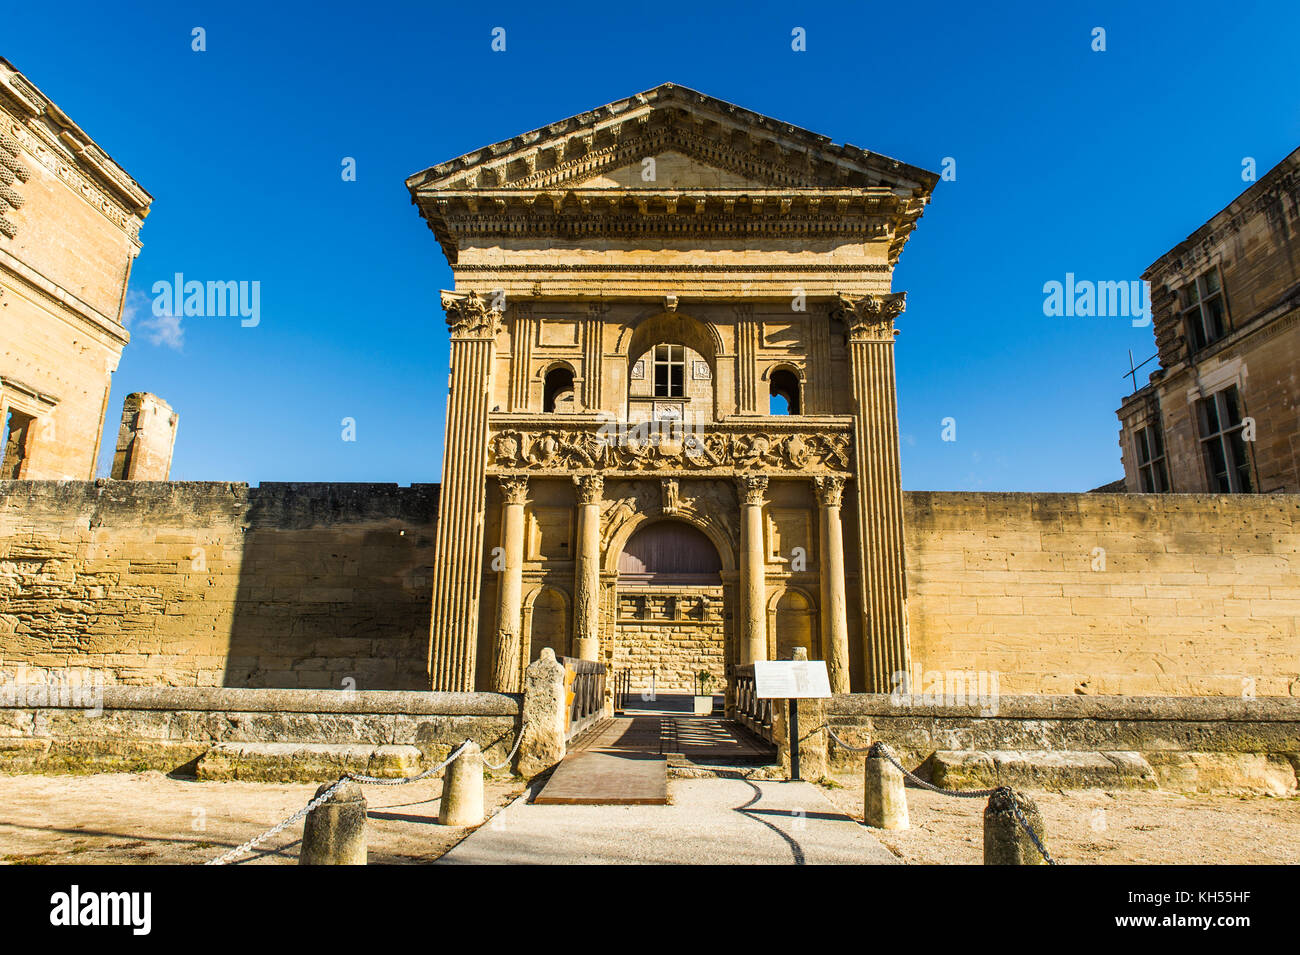 Europa, Frankreich, Vaucluse, Luberon, La Tour-d'Aigues. Die Fassade des Schlosses. Stockfoto